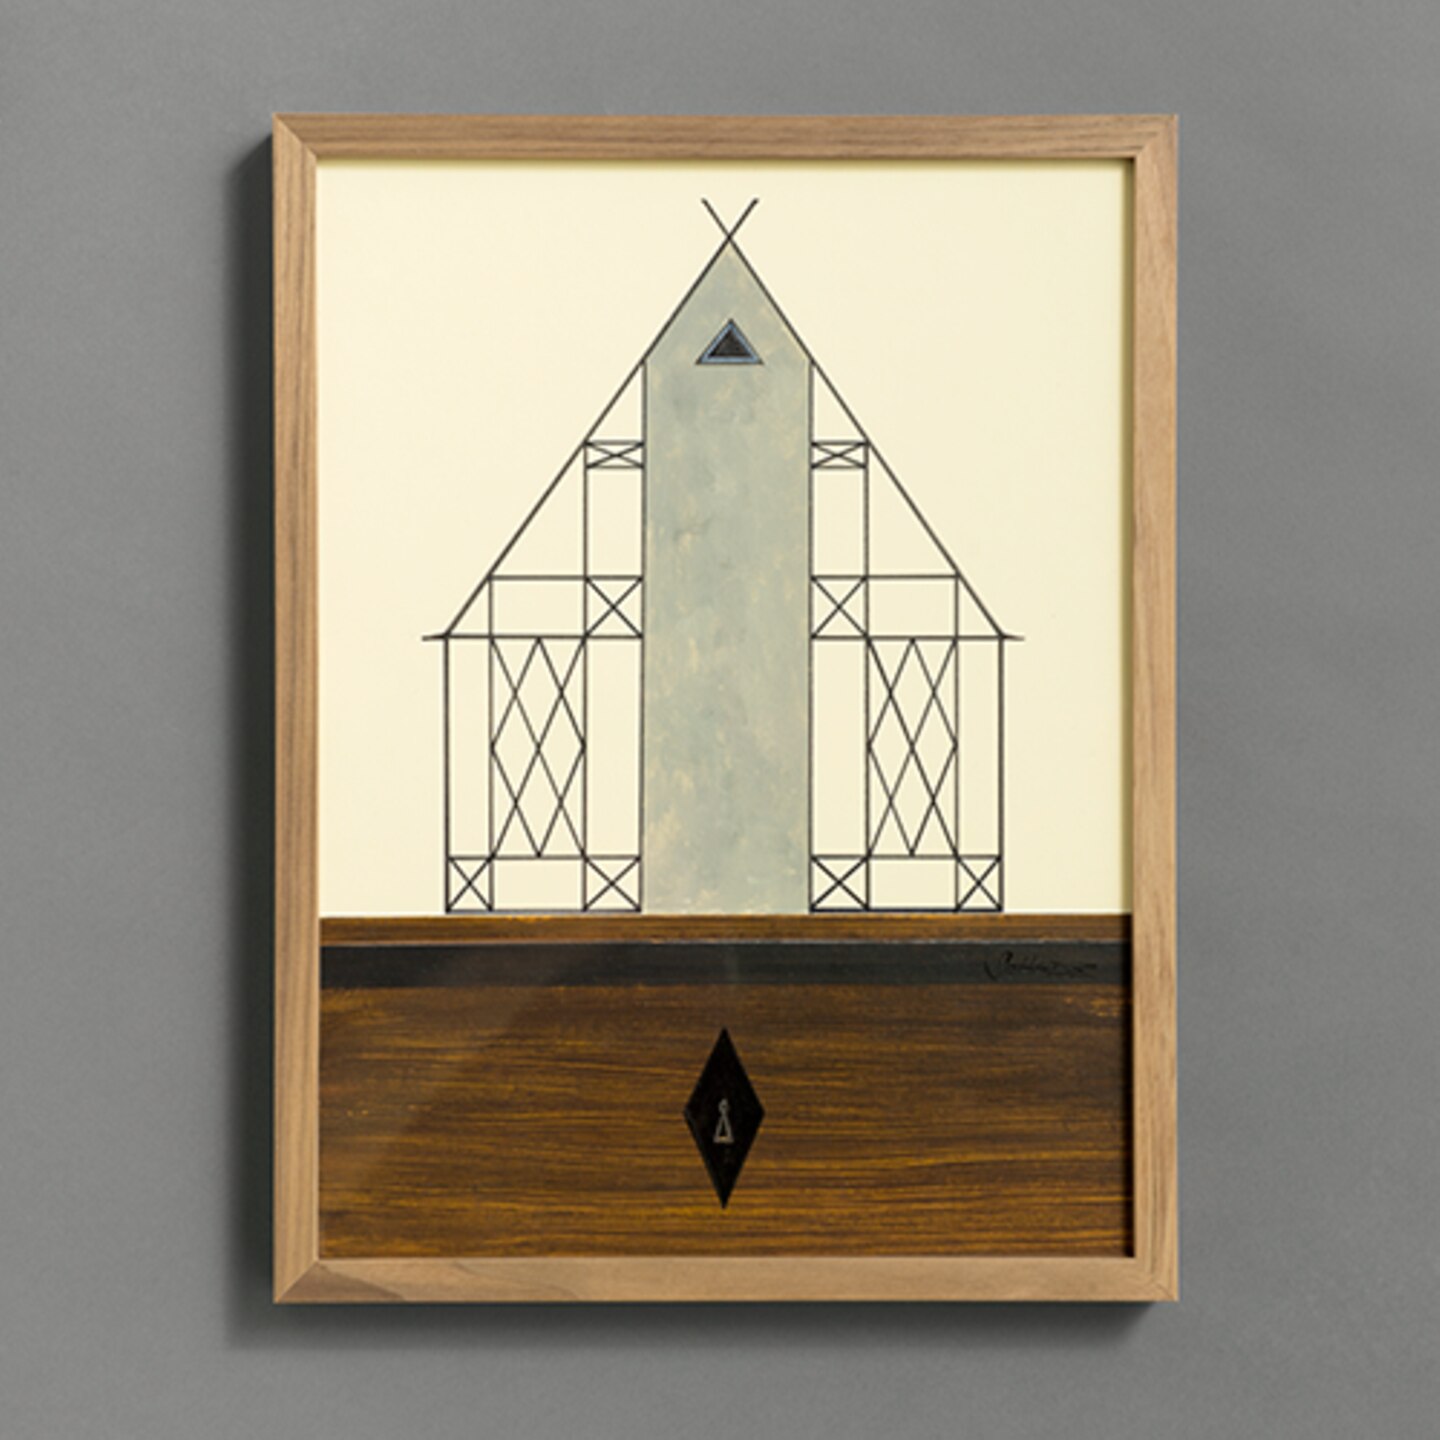 Auktion: MODELLHAUS TYP MODERNES FACHWERKHAUS MIT BETONGIEBEL von Titus Schade (2015), Galerie Eigen + Art. Format: 40 x 30 cm. Material: Acryl und Tusche auf Papier.